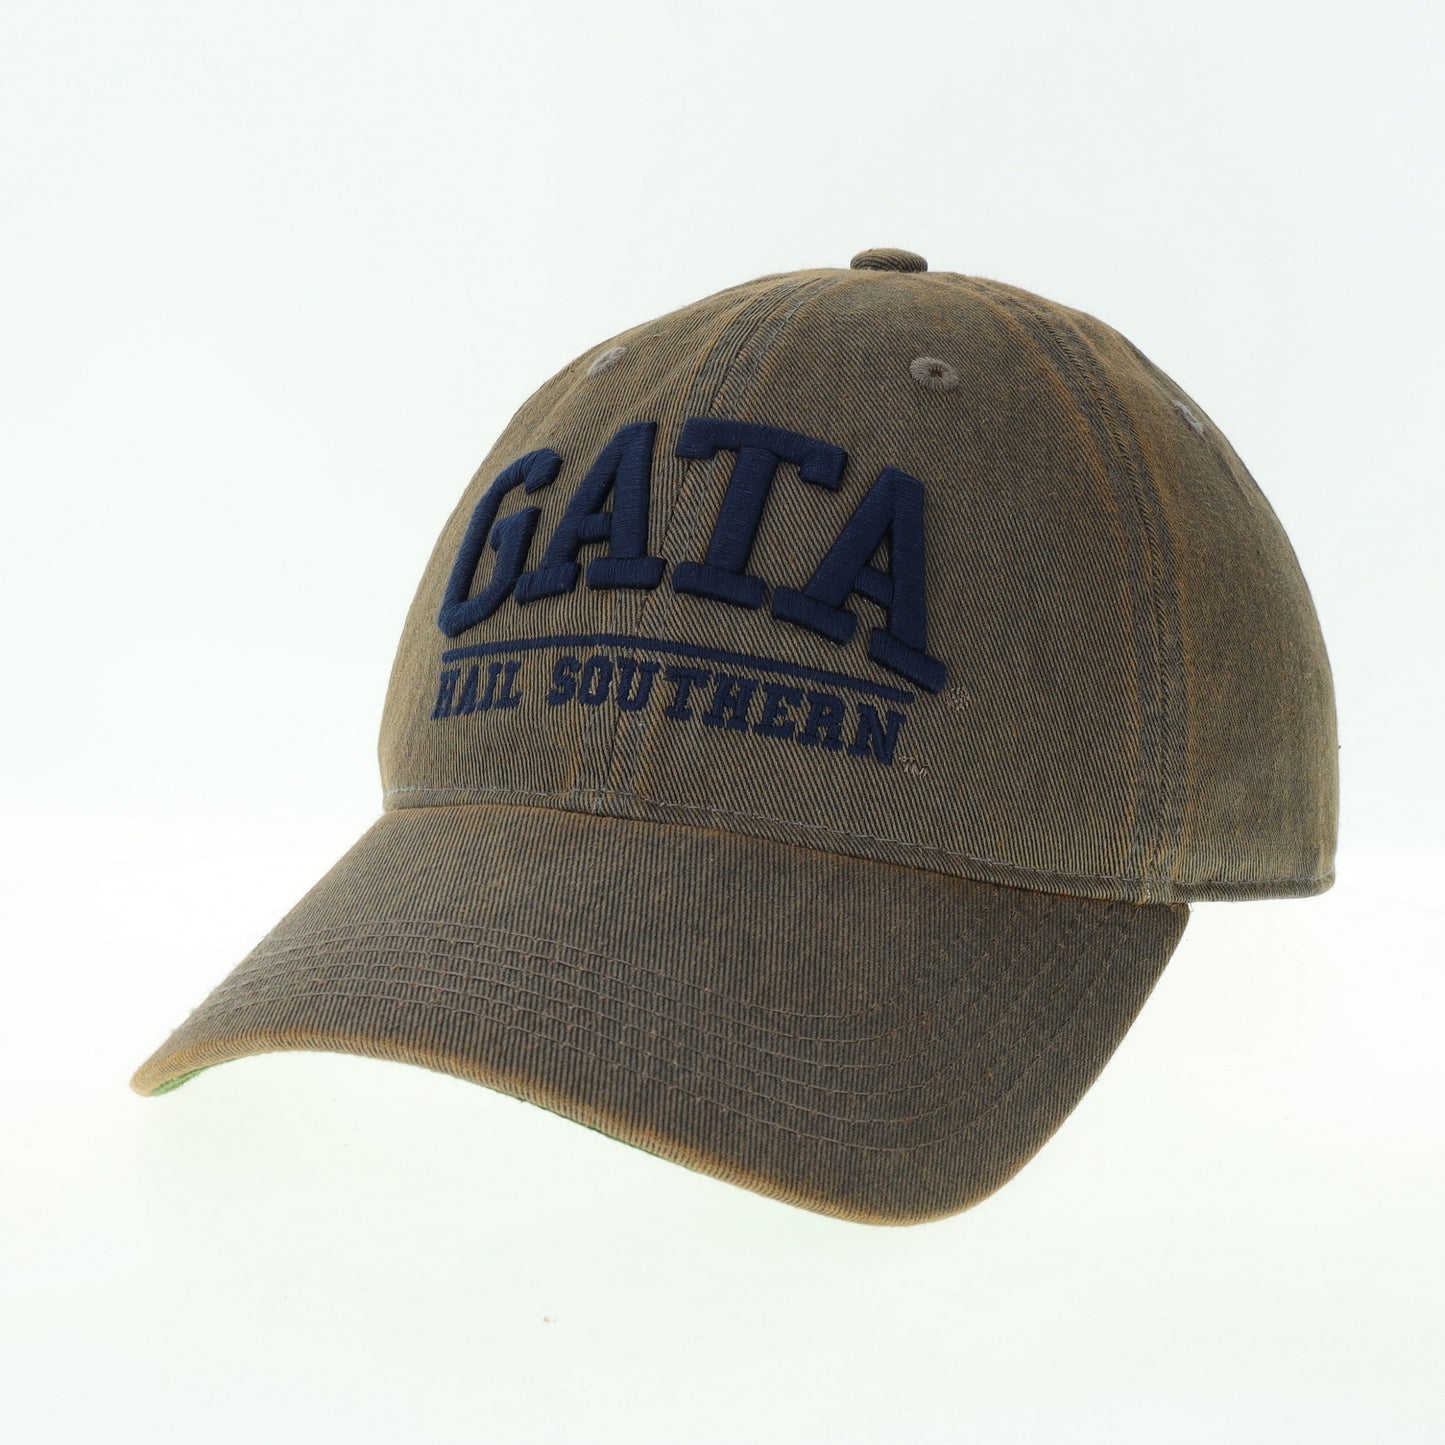 GATA Vintage Twill Cap - Grey